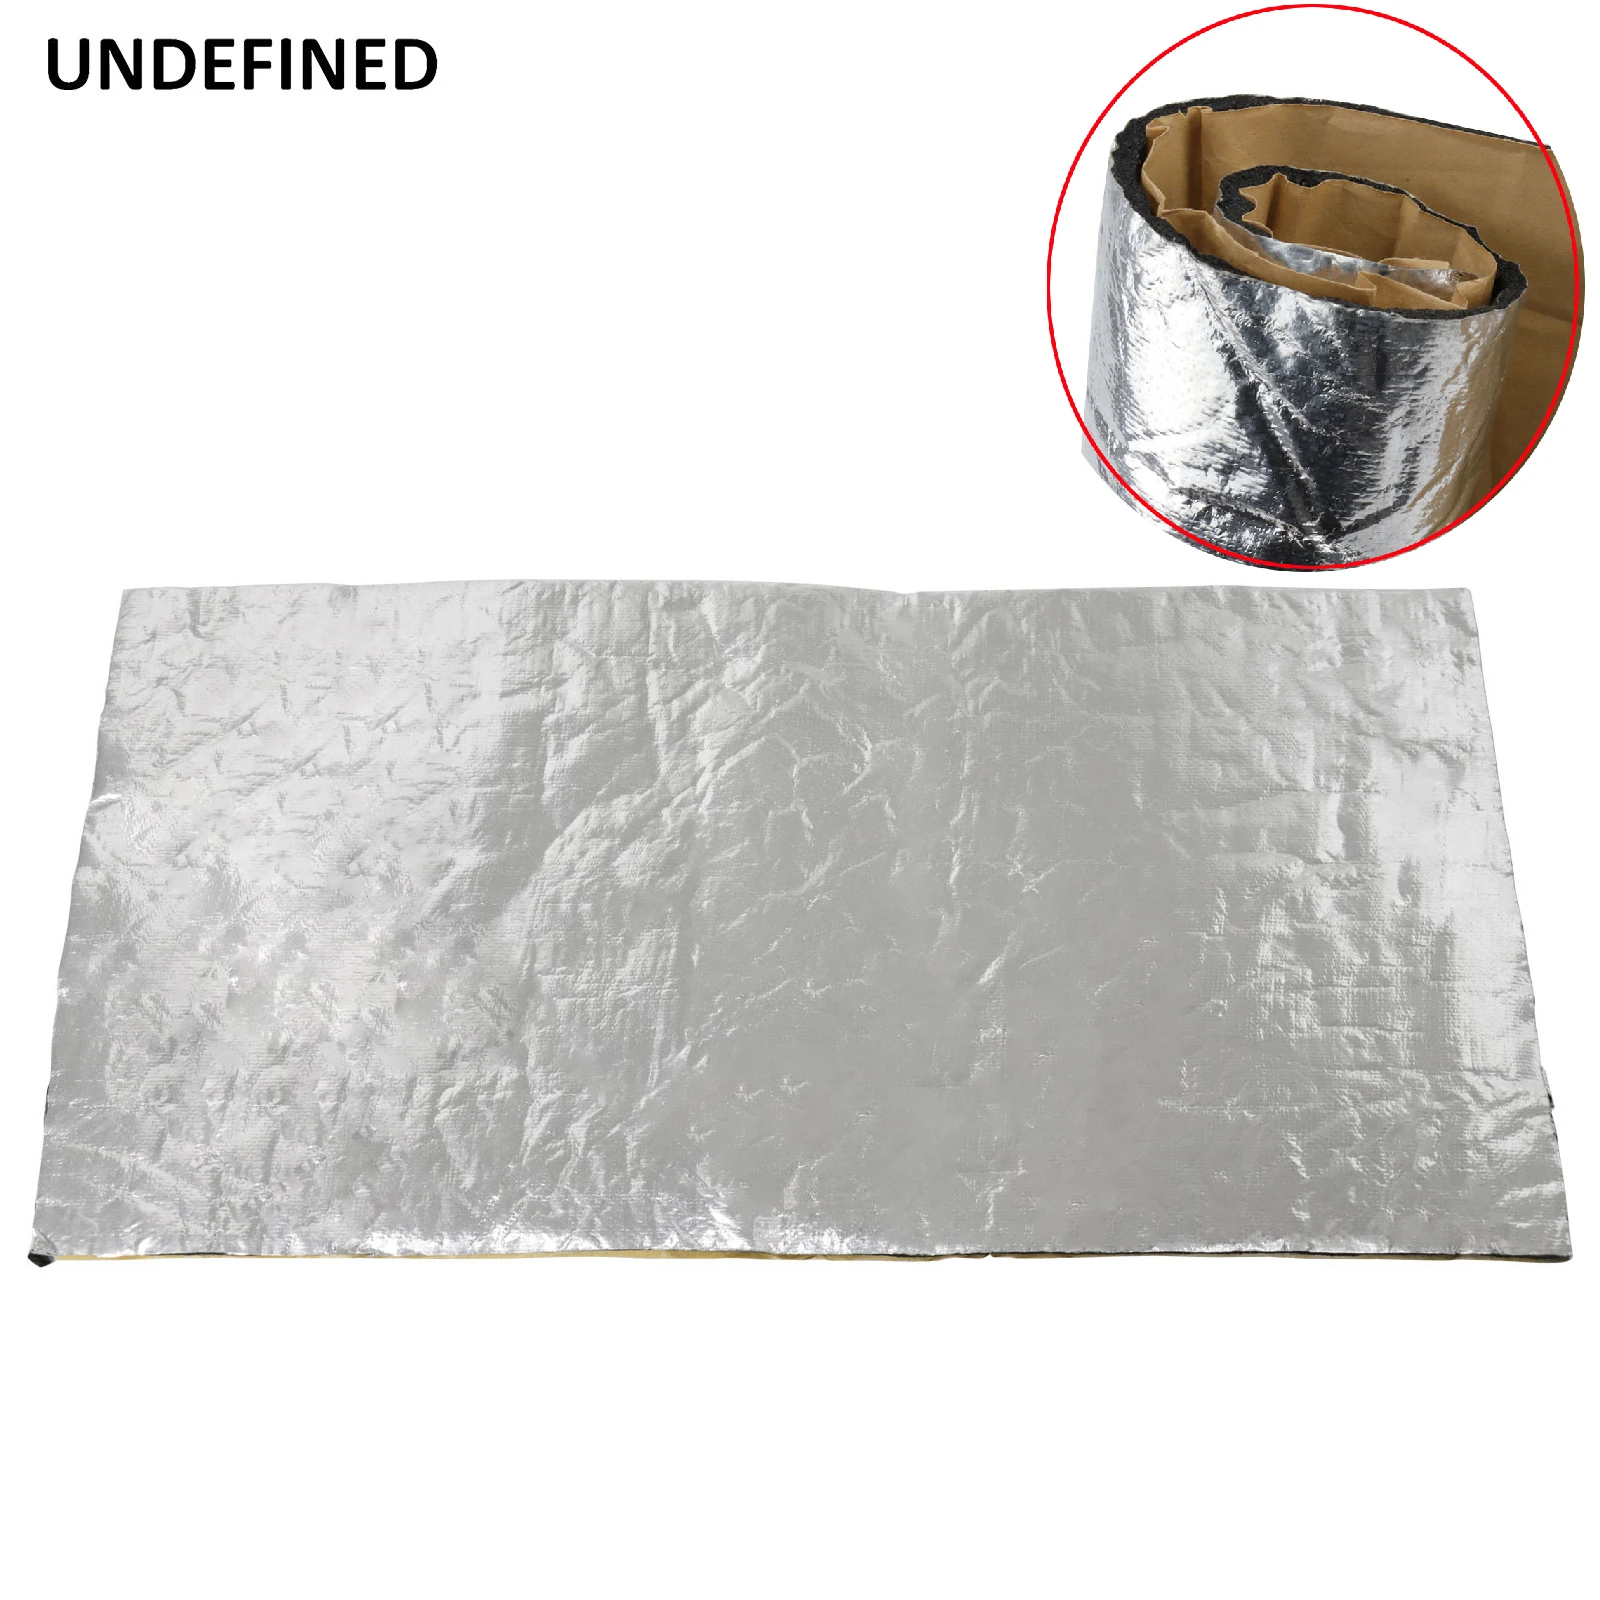 Heat Barrier Fiberglass with aluminum foil 100 x 50cm x 5mm - Heat